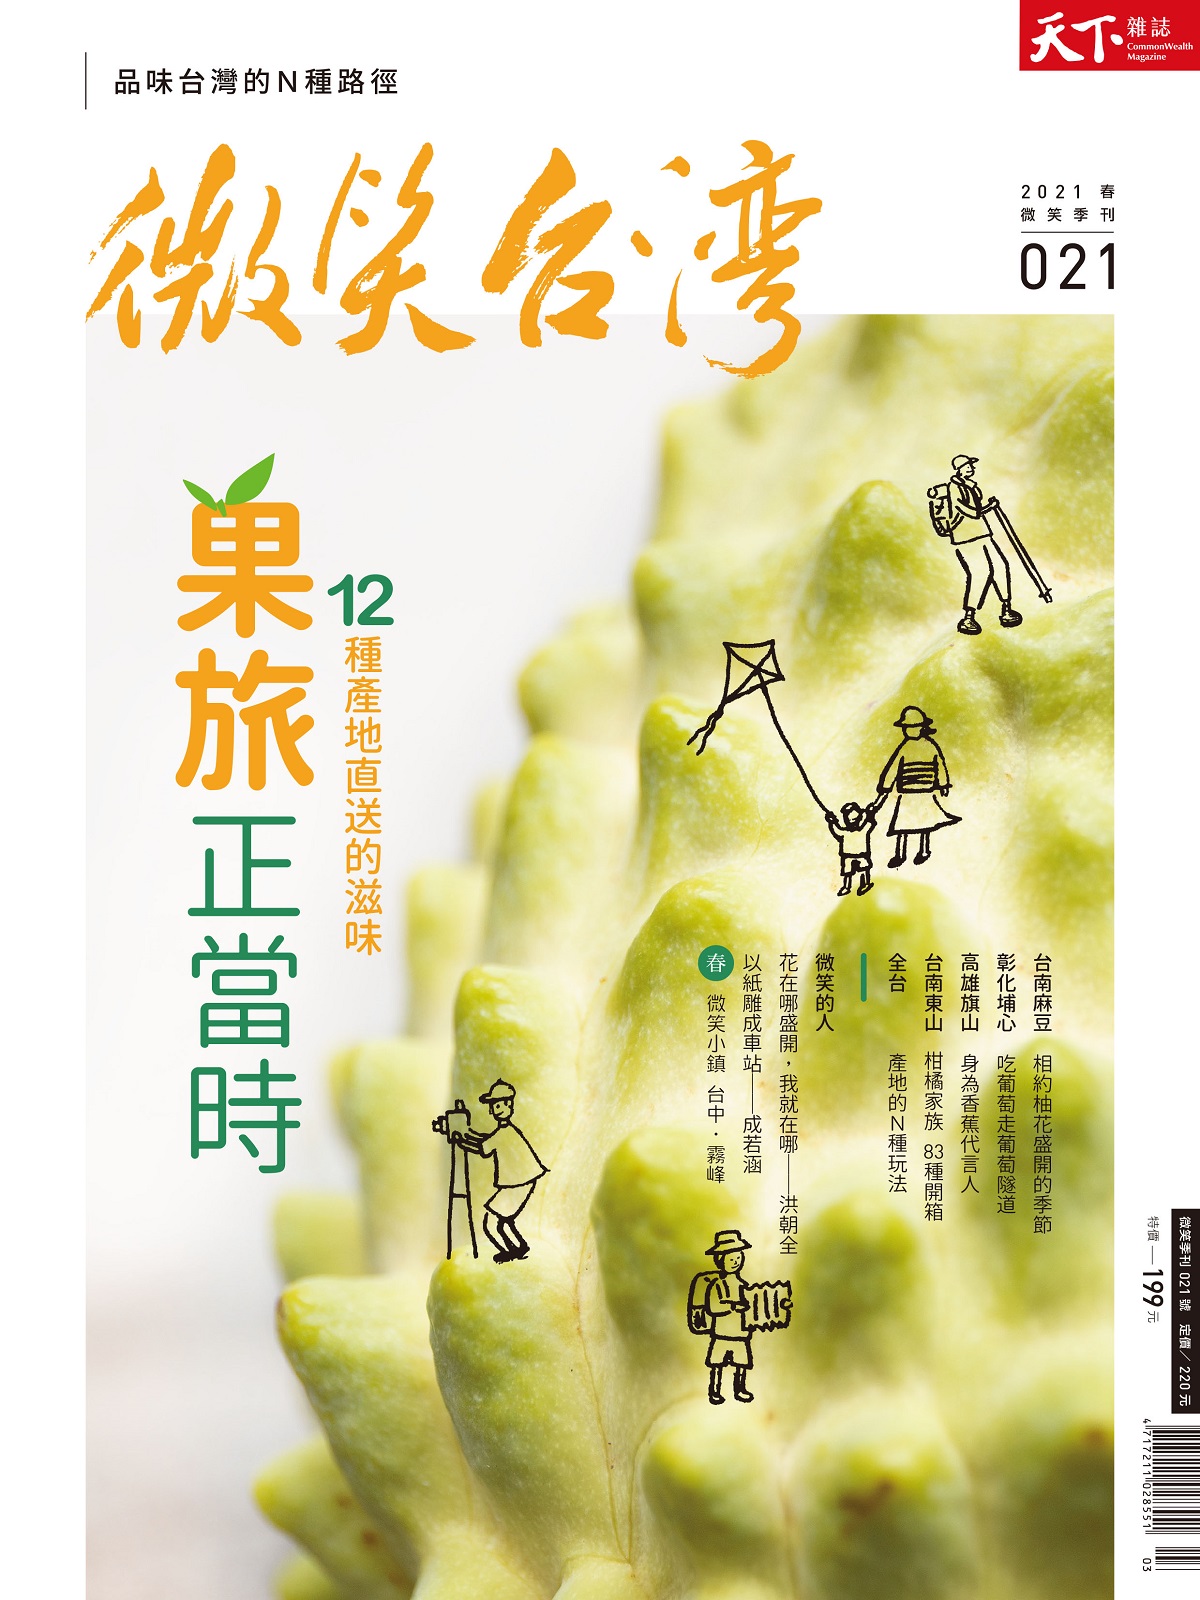 天下雜誌《微笑台灣》 2021 春季號